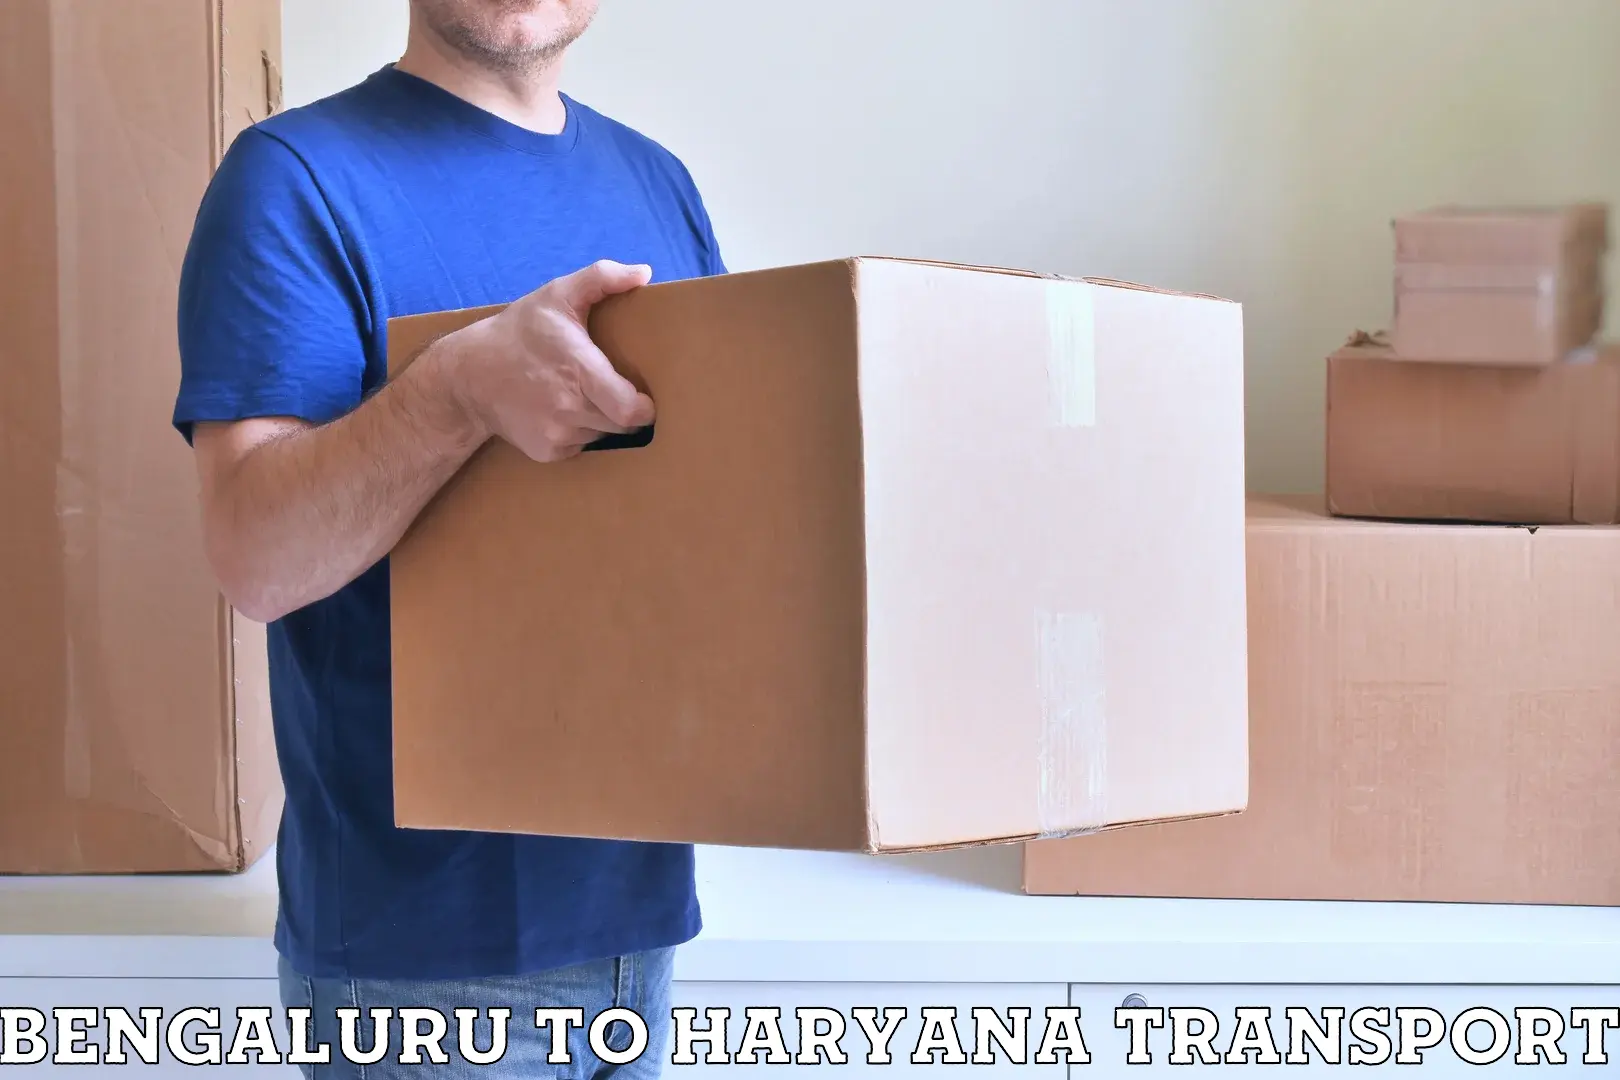 Container transport service Bengaluru to Kurukshetra University